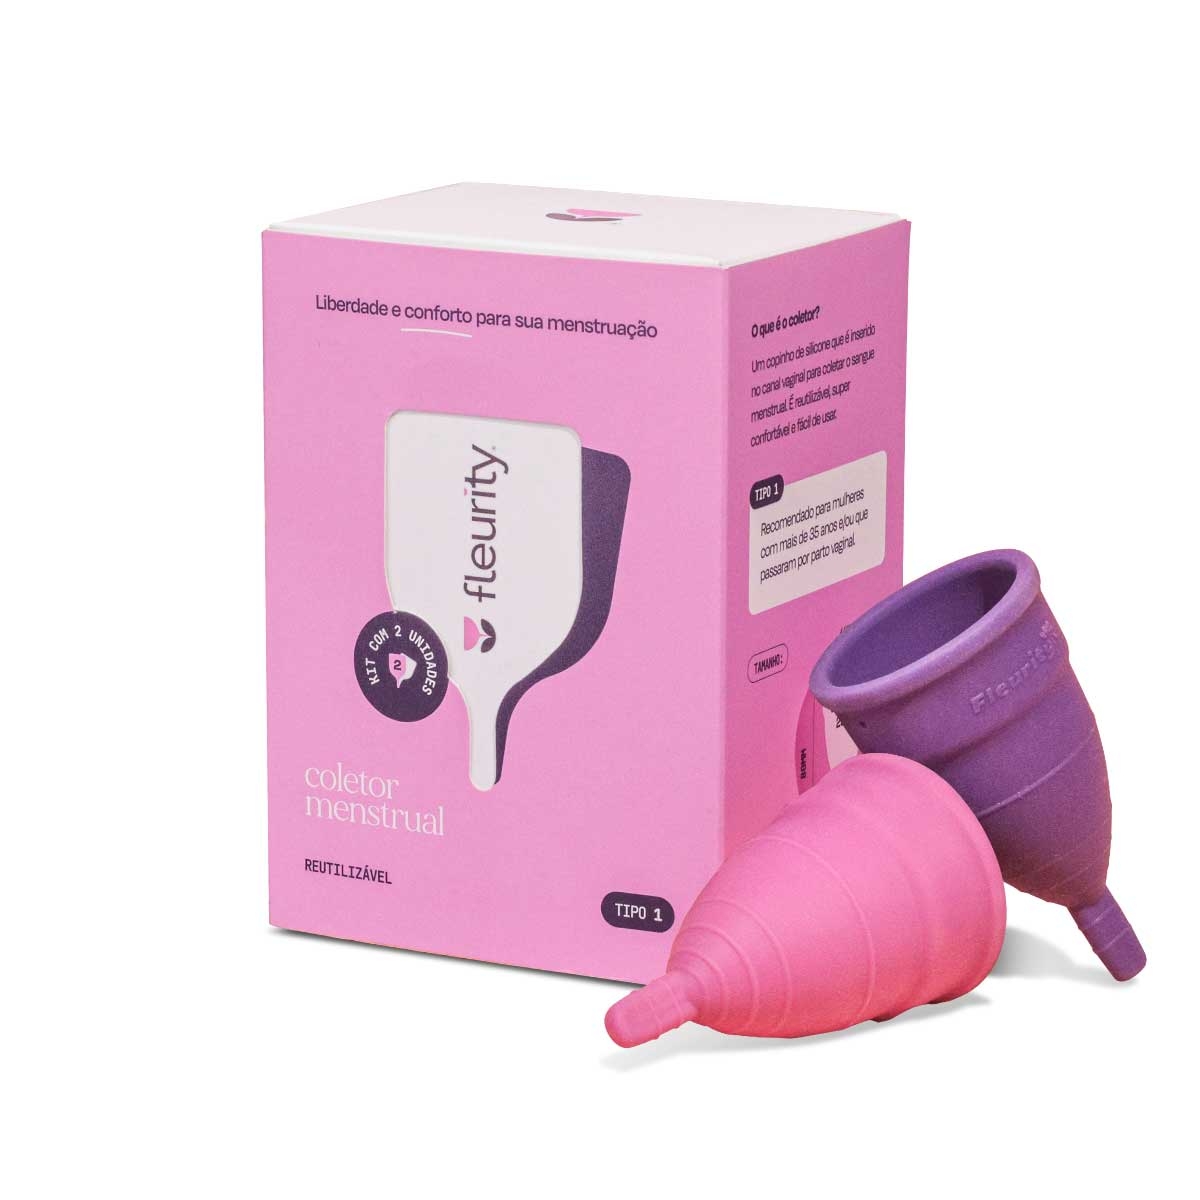 Fleurity - 🚨 Se a sua menstruação tem algum tipo de cheiro ou odor  característico que você nãooooo goste, é porque você, AINDA, não conhece o  coletor menstrual! 😉 ⠀⠀⠀⠀⠀⠀⠀⠀⠀ 👉🏻Se liga!